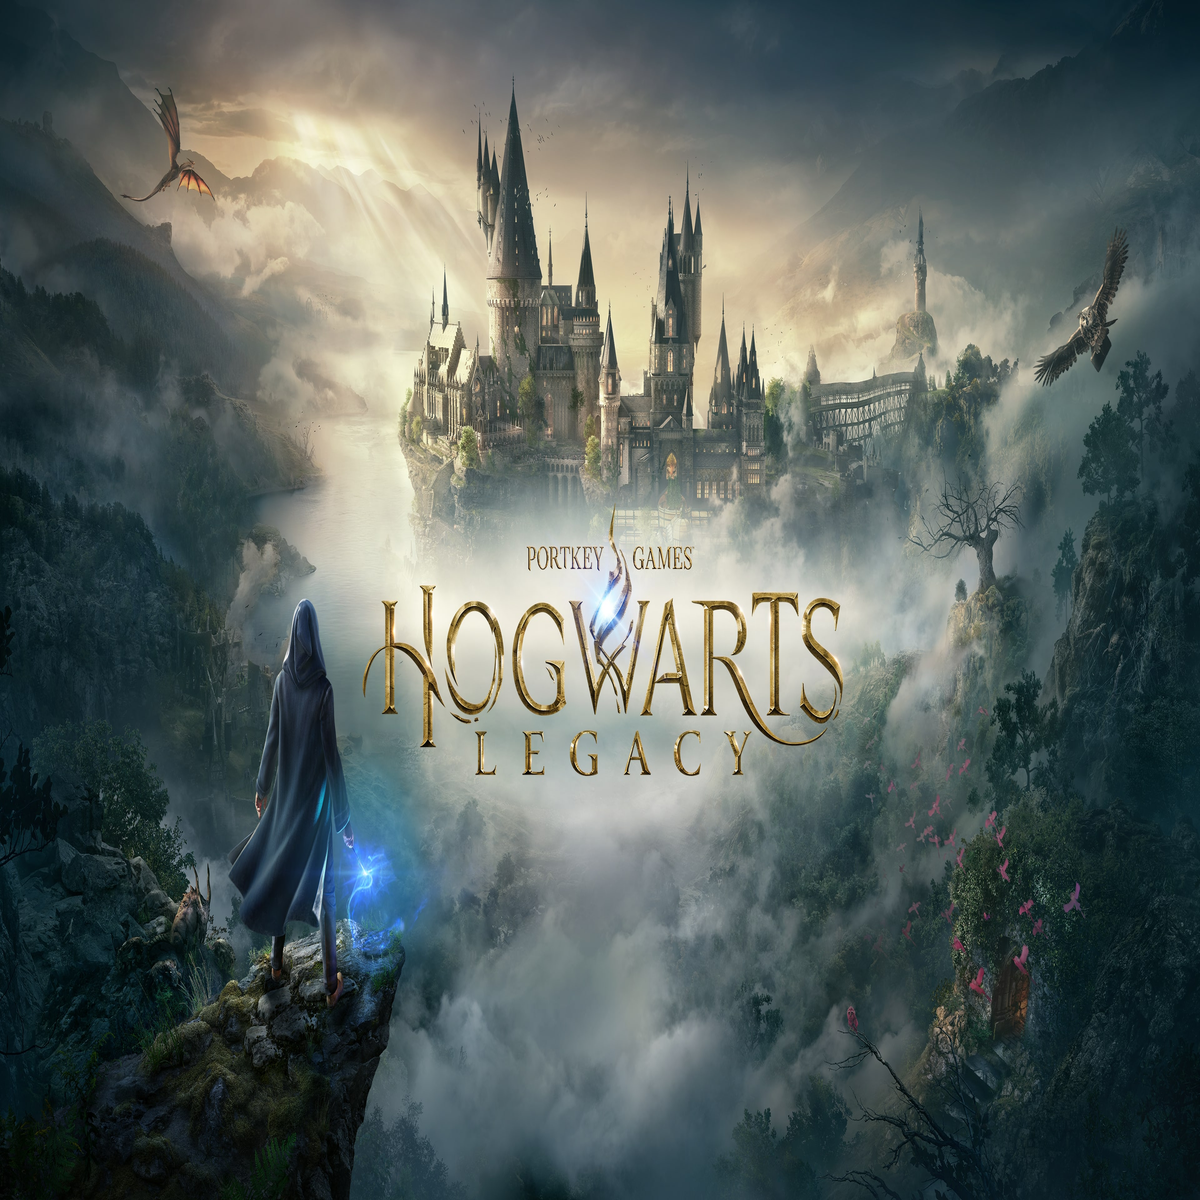 Hogwarts Legacy ocupa 4 lugares nos mais vendidos da Steam